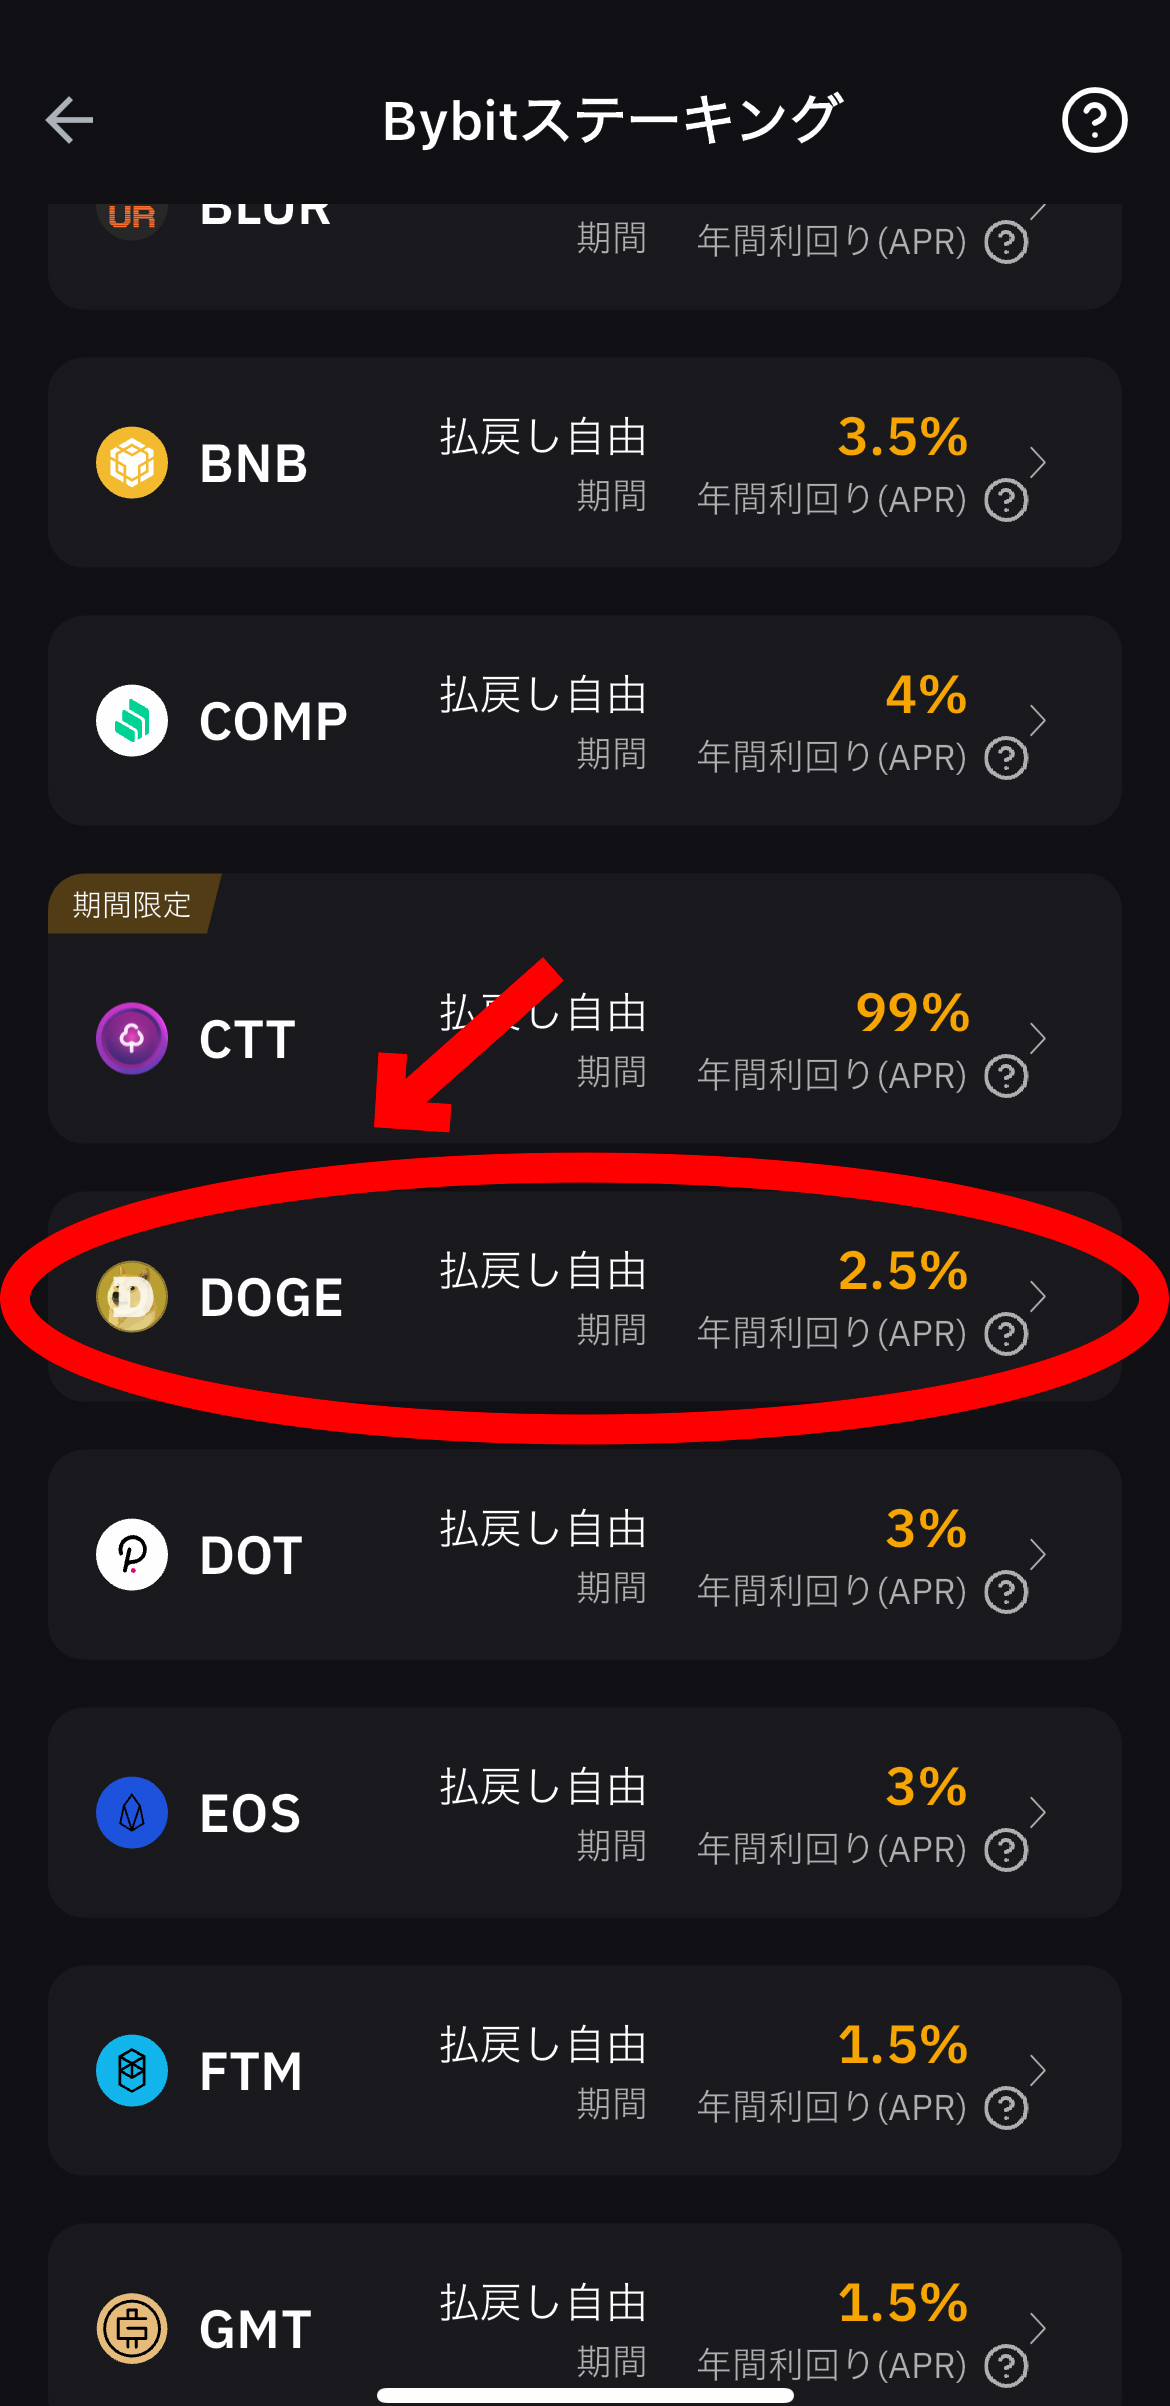 ドージコインのステーキング方法【Bybit】【バイビット】【DOGE】【仮想通貨】DOGEを選択します